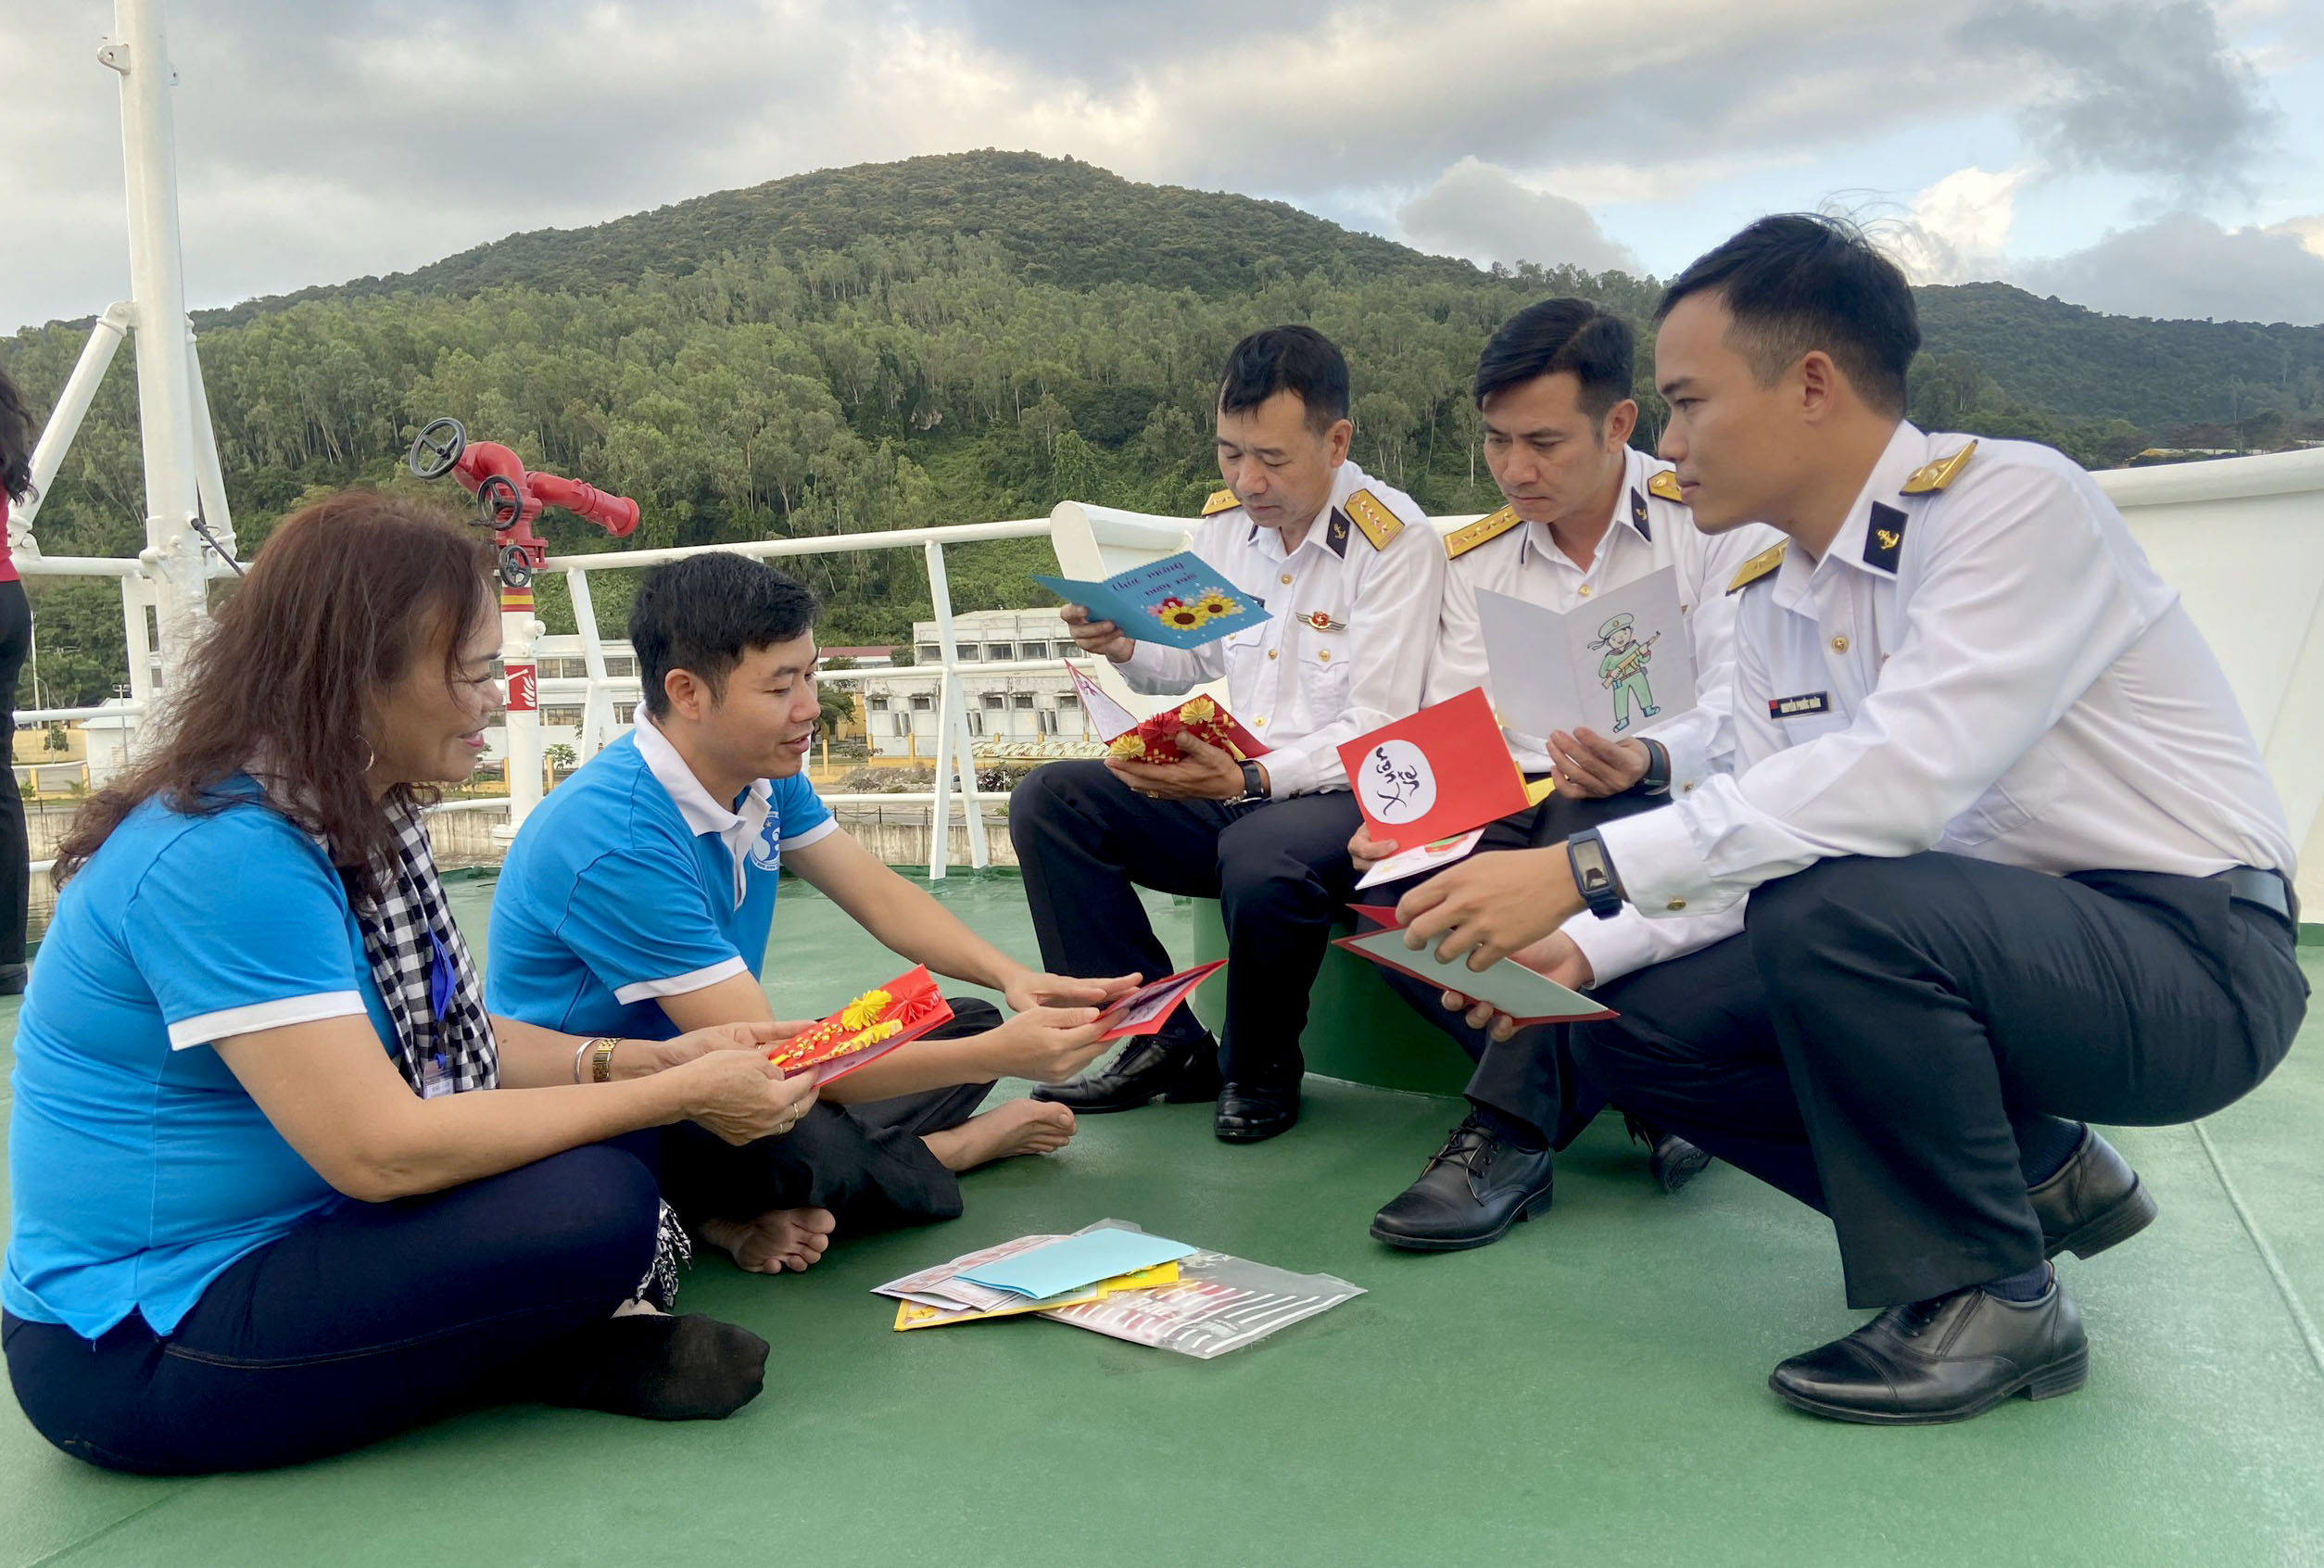 CLB Tuổi trẻ vì biển đảo quê hương gửi tấm thiệp chúc mừng năm mới của học sinh mọi miền Tổ quốc đến những người lính hải quân Vùng 3.